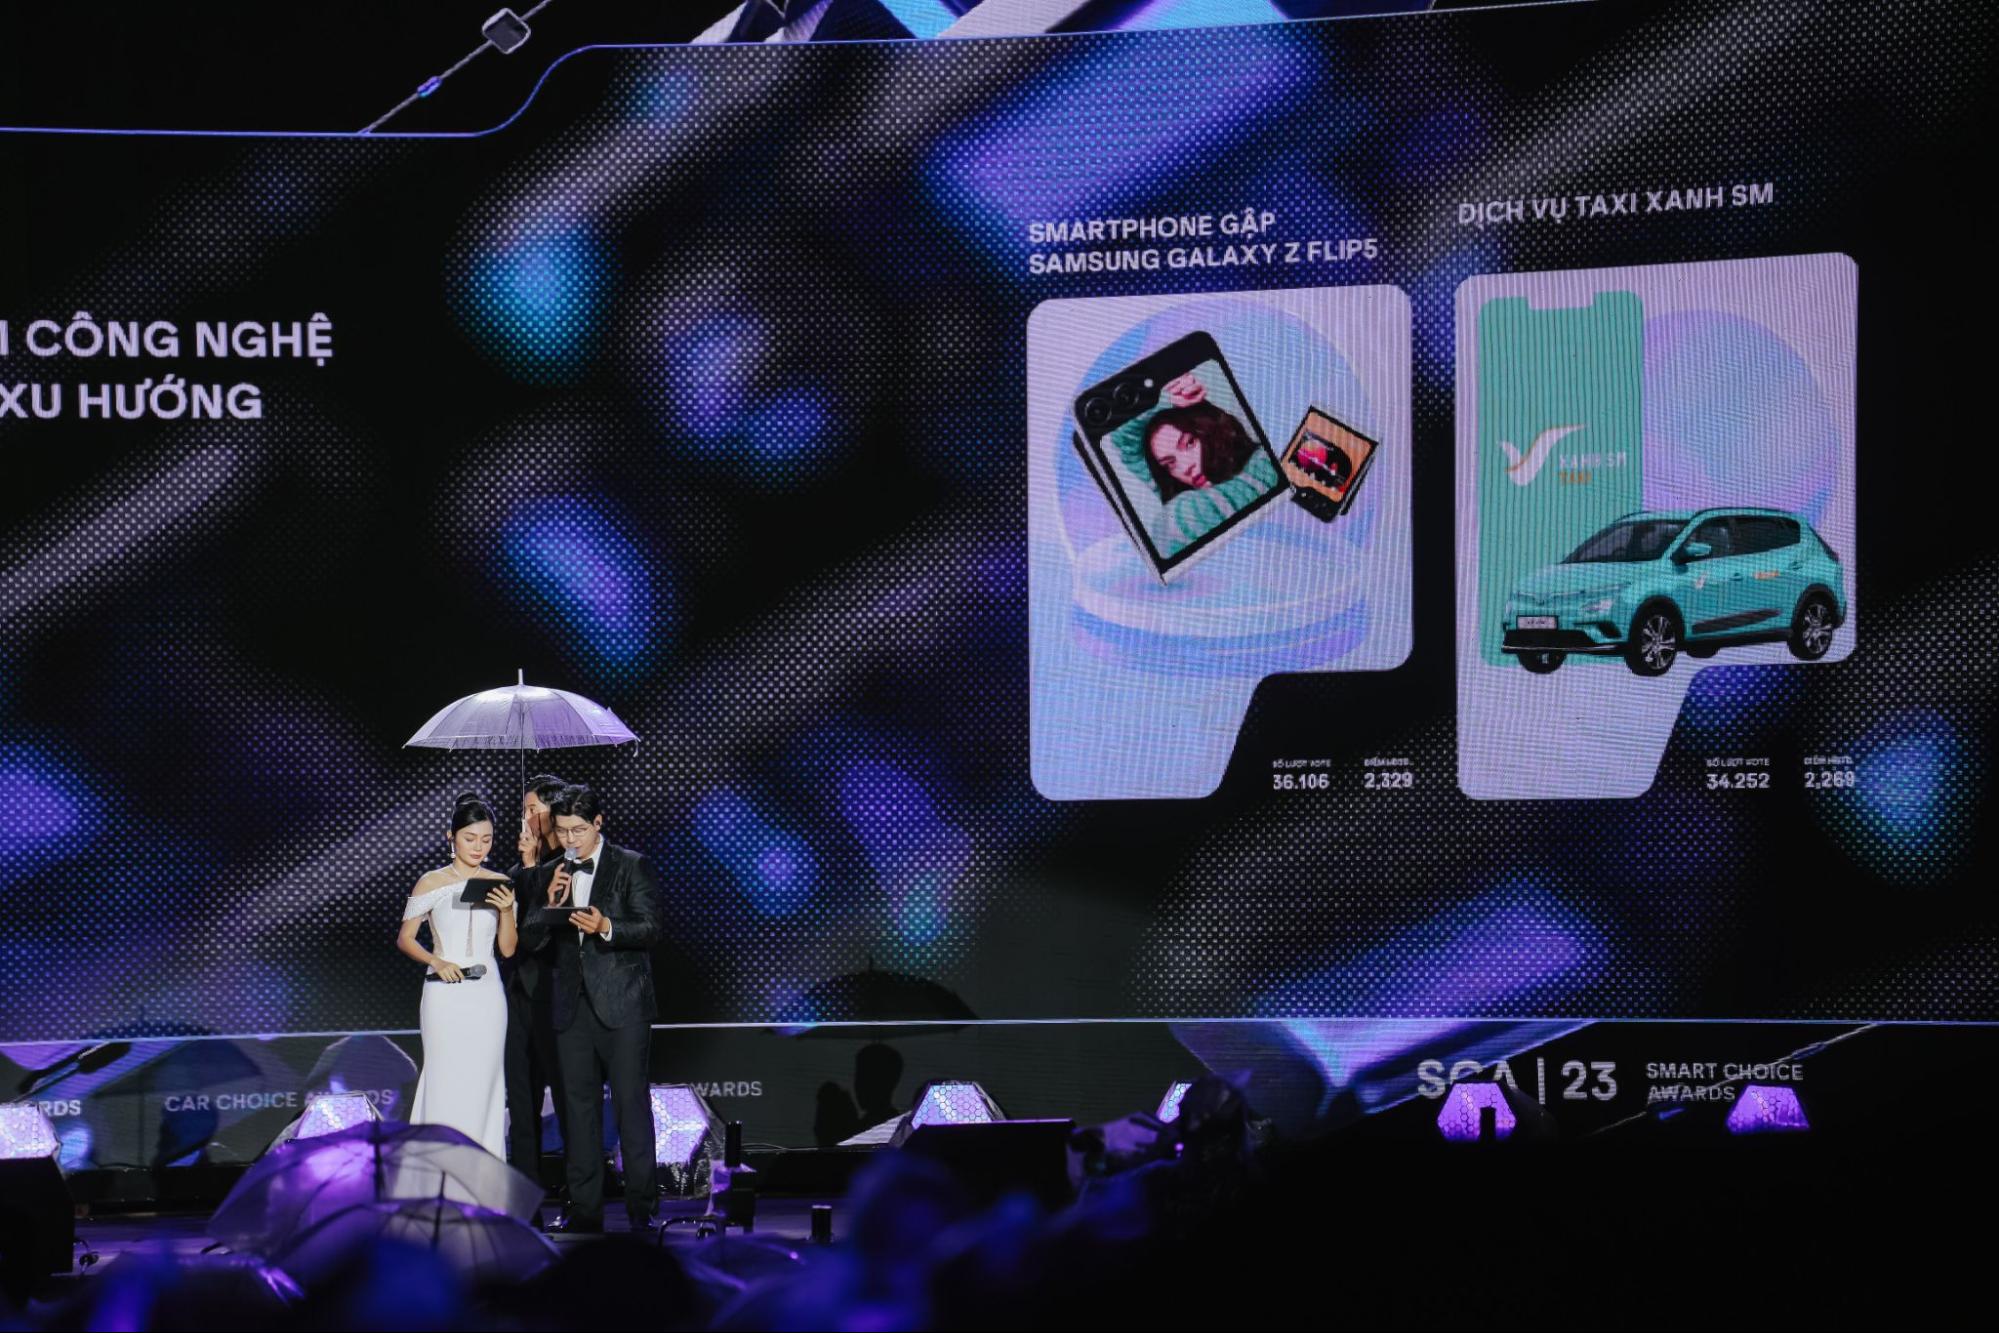 Samsung đại thắng tại Better Choice Awards: Khẳng định vị thế hãng công nghệ đi đầu trong đổi mới sáng tạo - Ảnh 4.